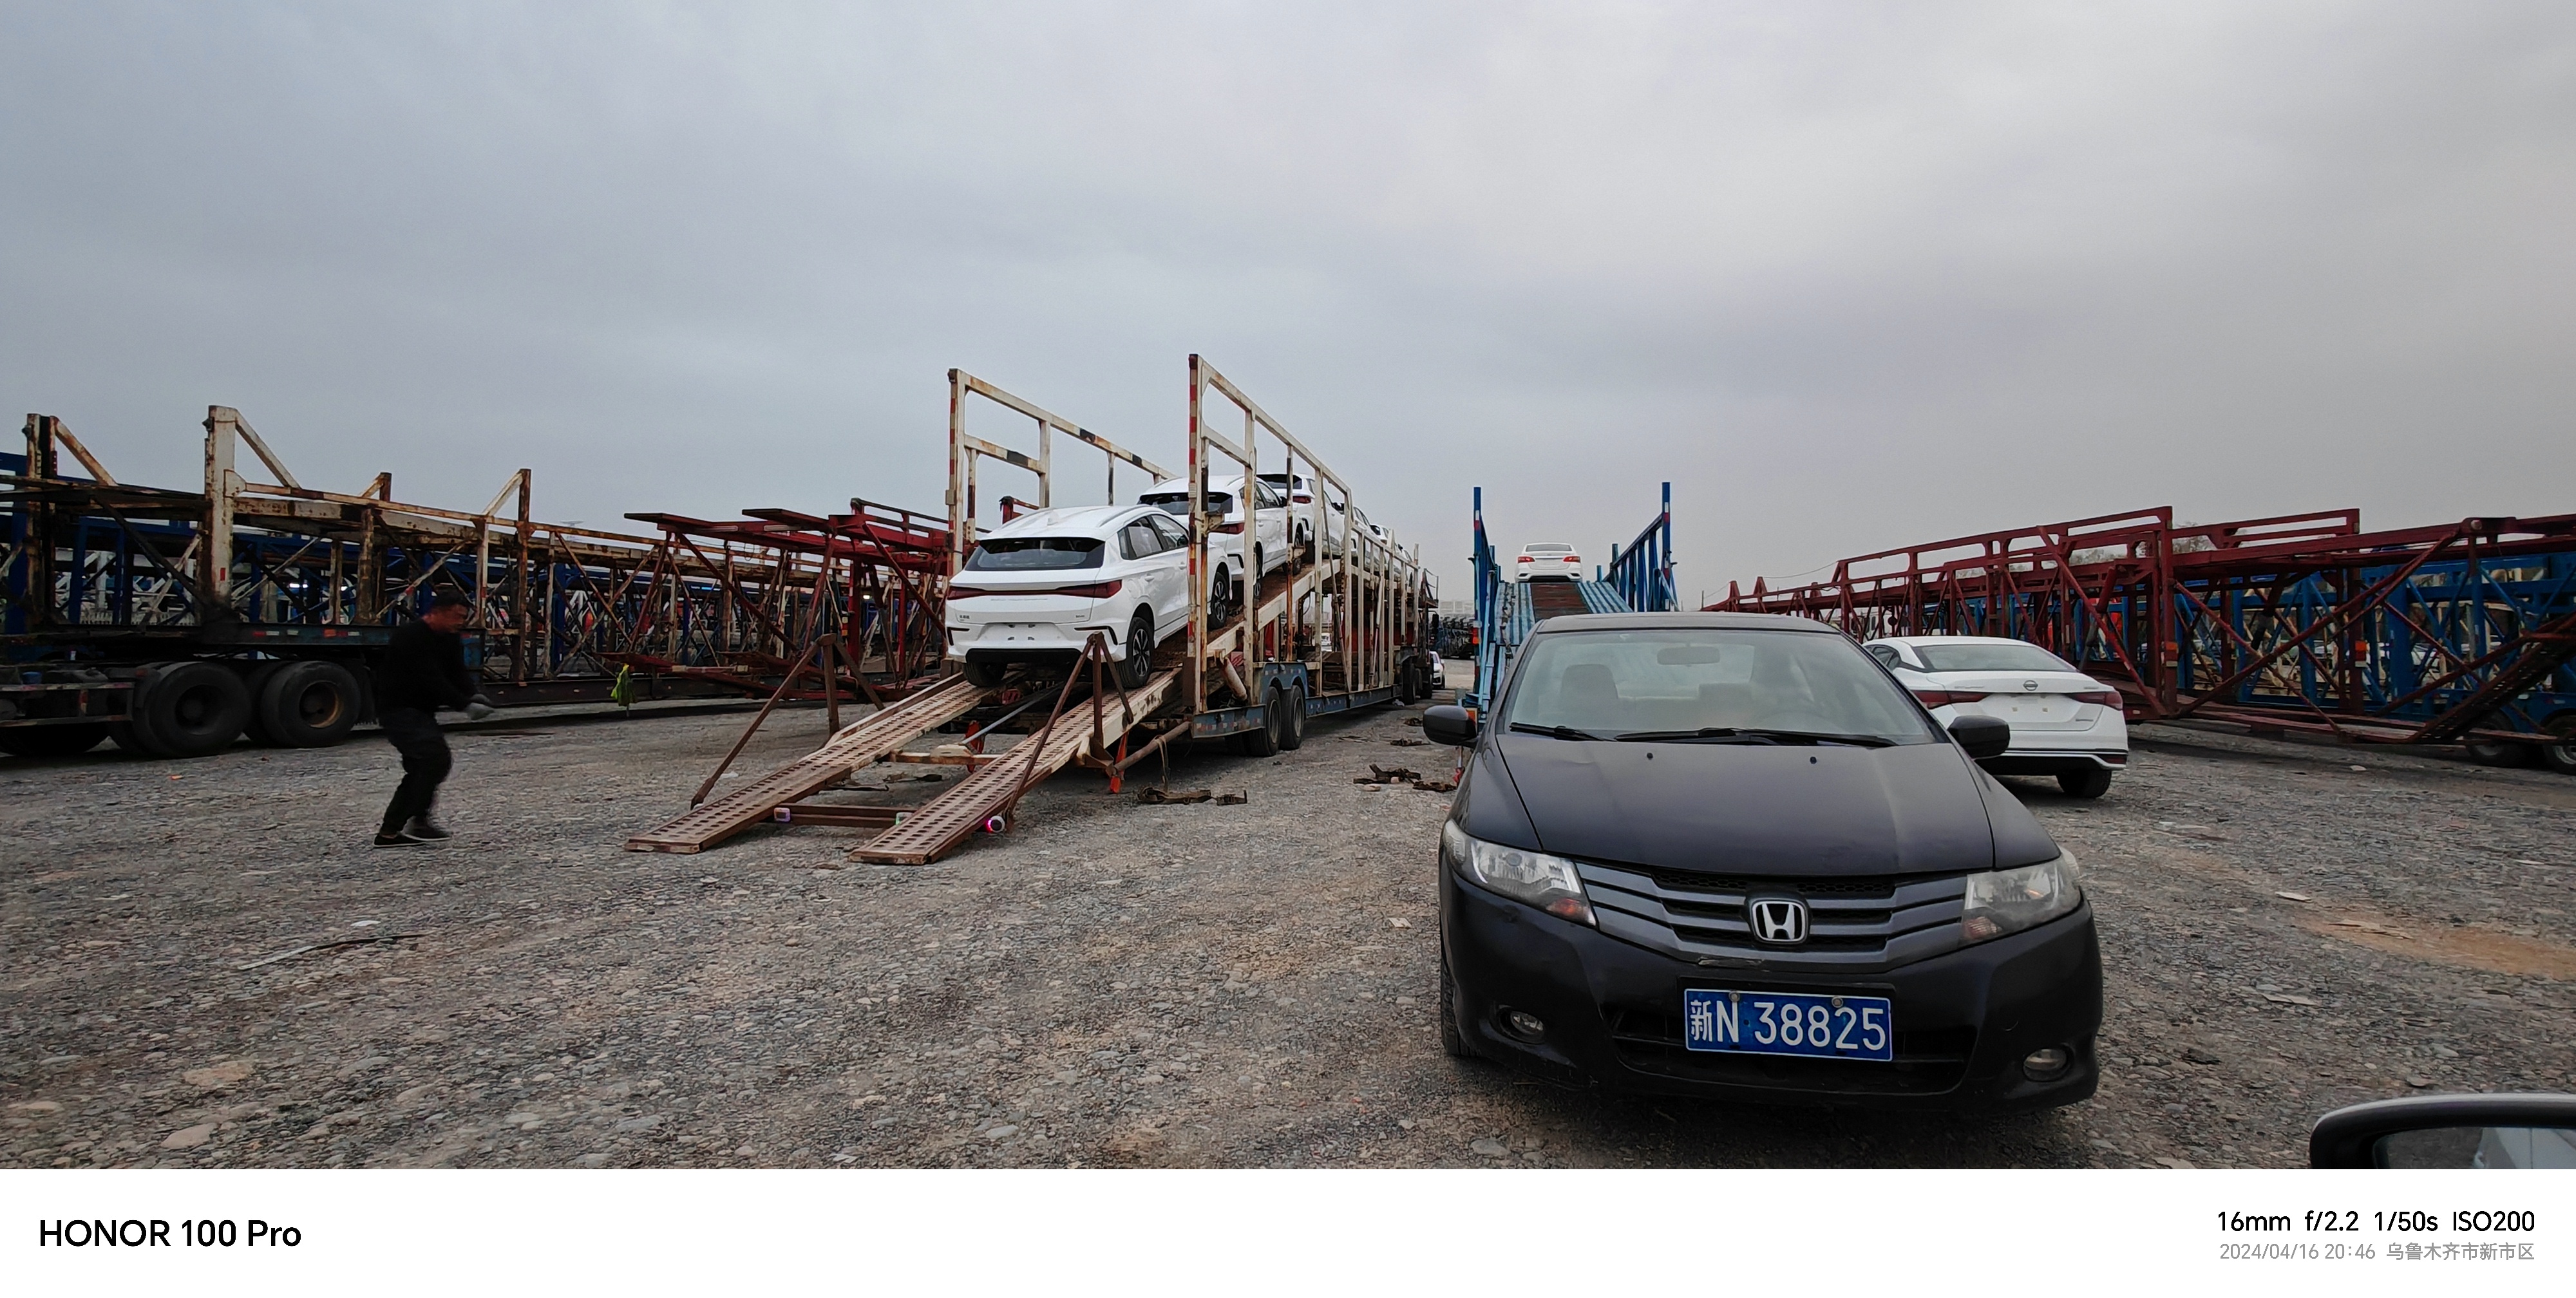 新疆阿勒泰汽车托运价格-汽车托运